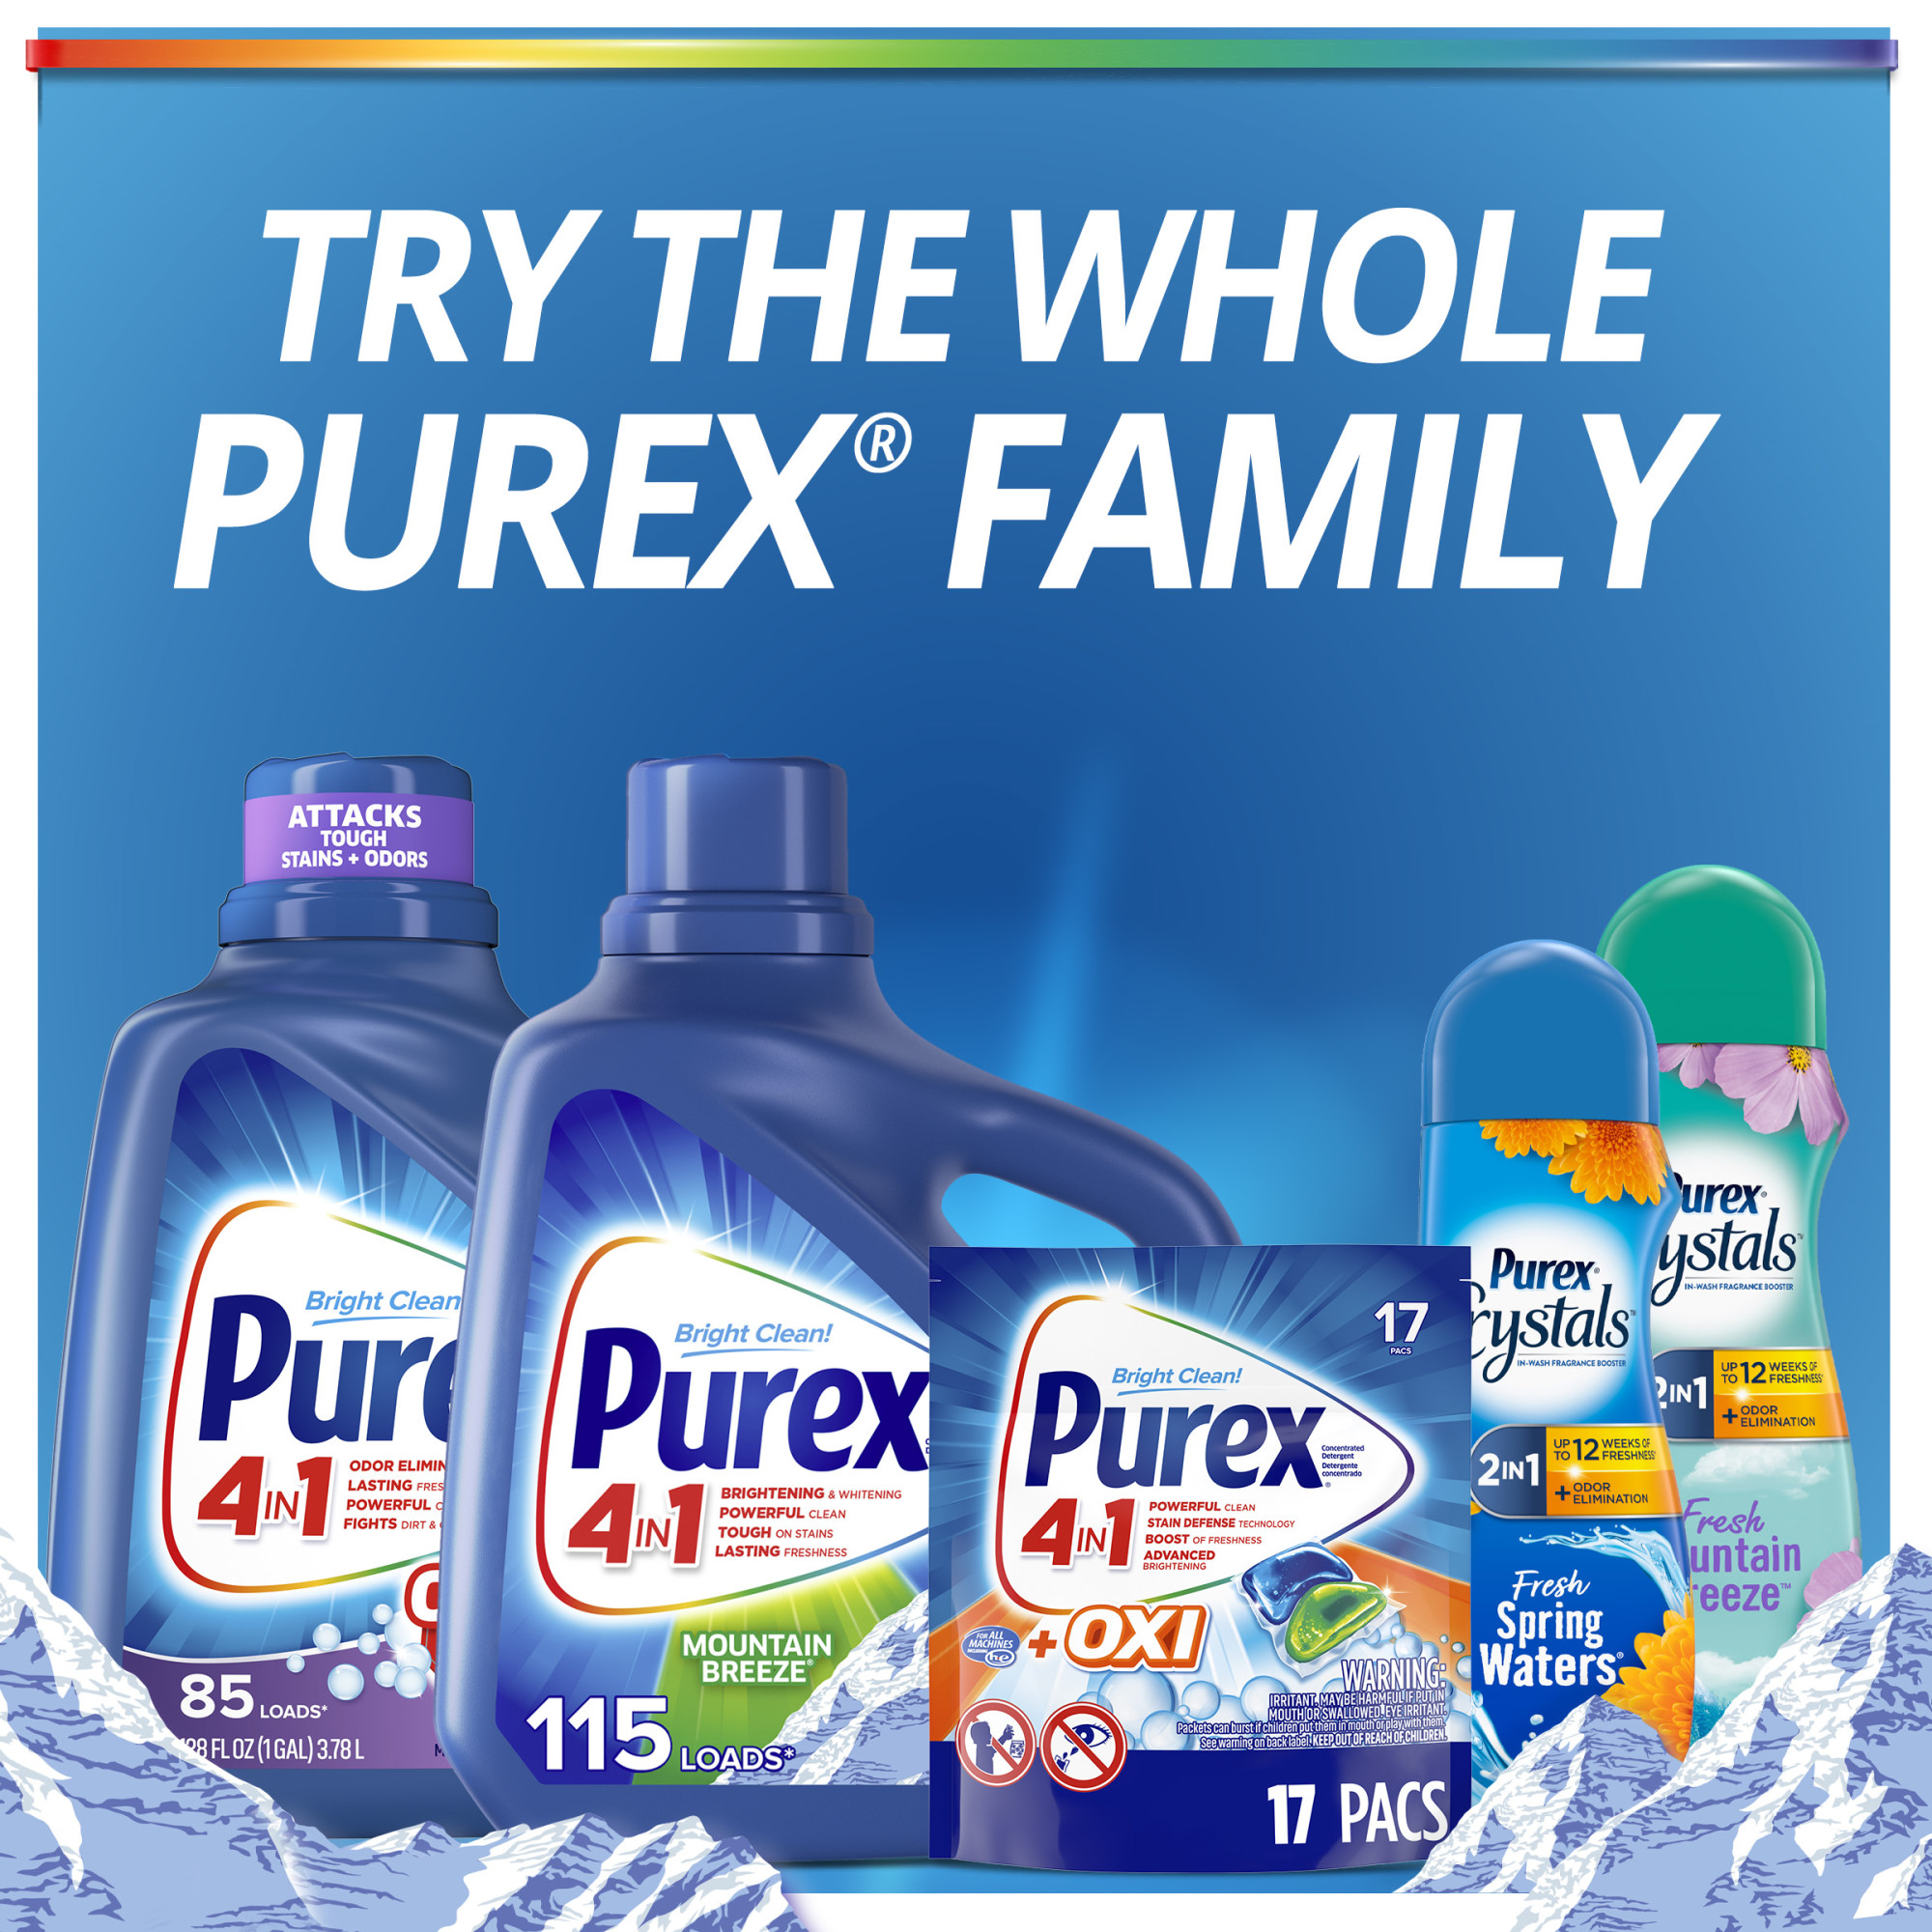 Purex Liquid Laundry Detergent, Mountain Breeze, 312 Fluid Ounces, 240 Loads - image 7 of 7